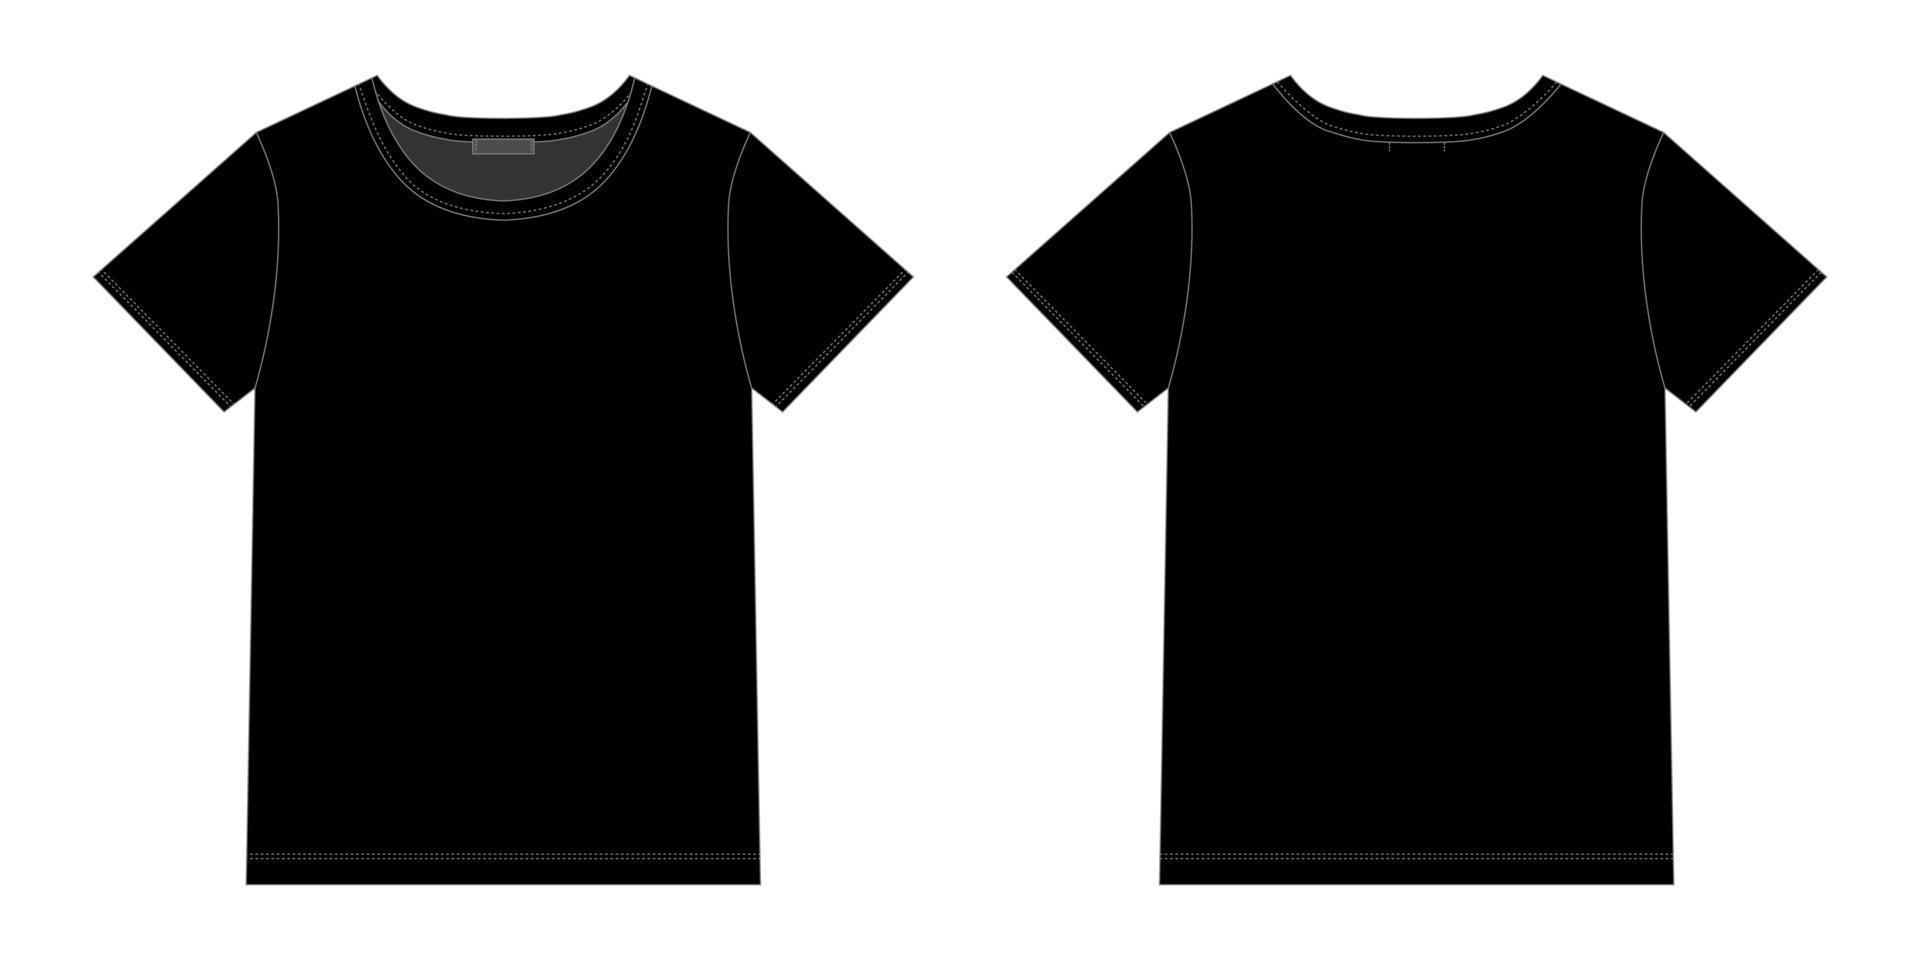 plantilla de diseño de camiseta negra unisex. vector frontal y posterior.